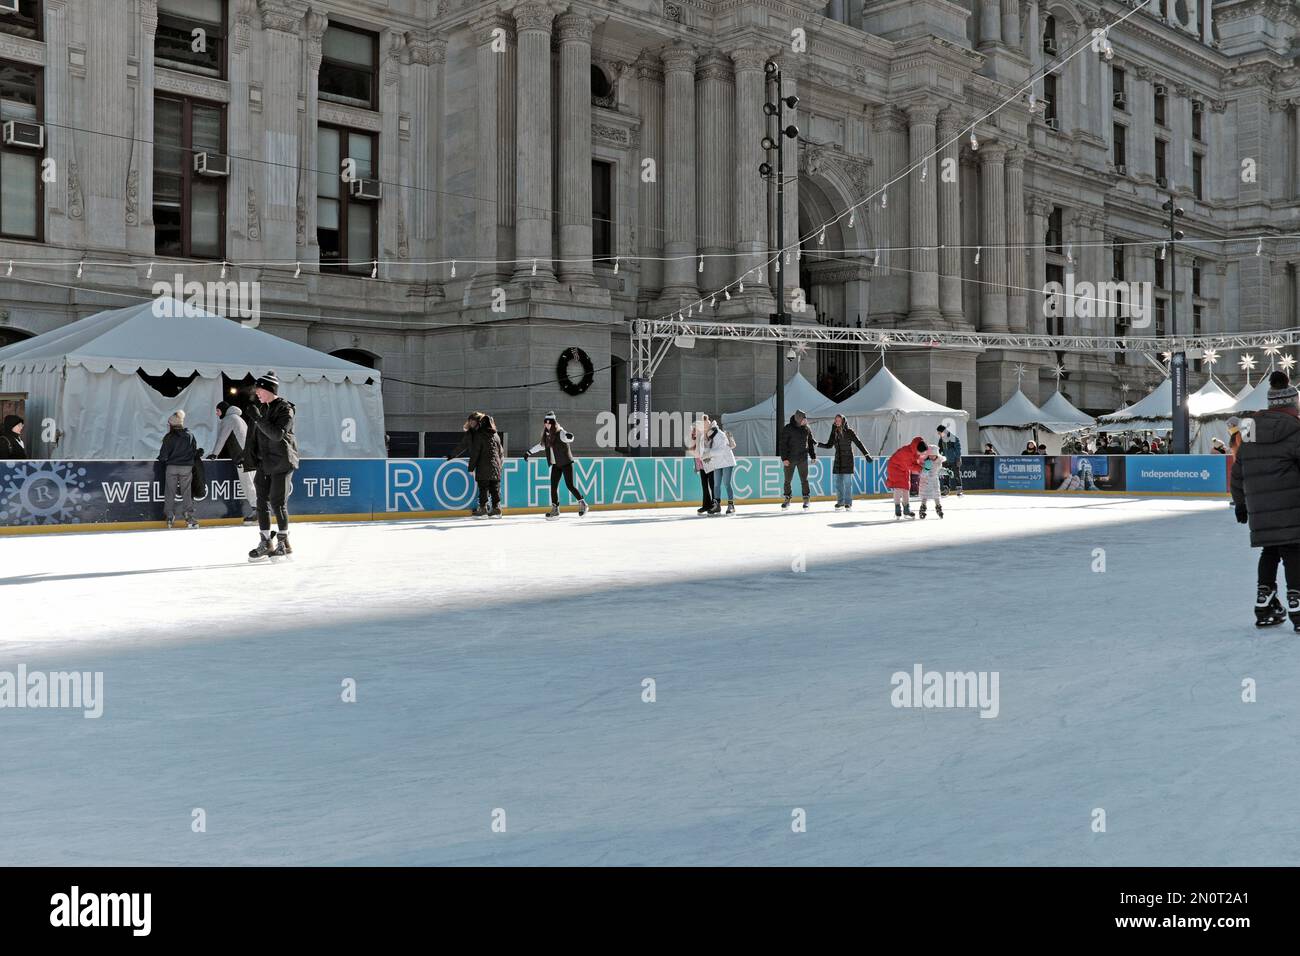 Die saisonale Rothman Ice Rink im Dilworth Park, Teil des Philadelphia Center City District, zieht Schlittschuhläufer zur Winterbahn im Freien an. Stockfoto